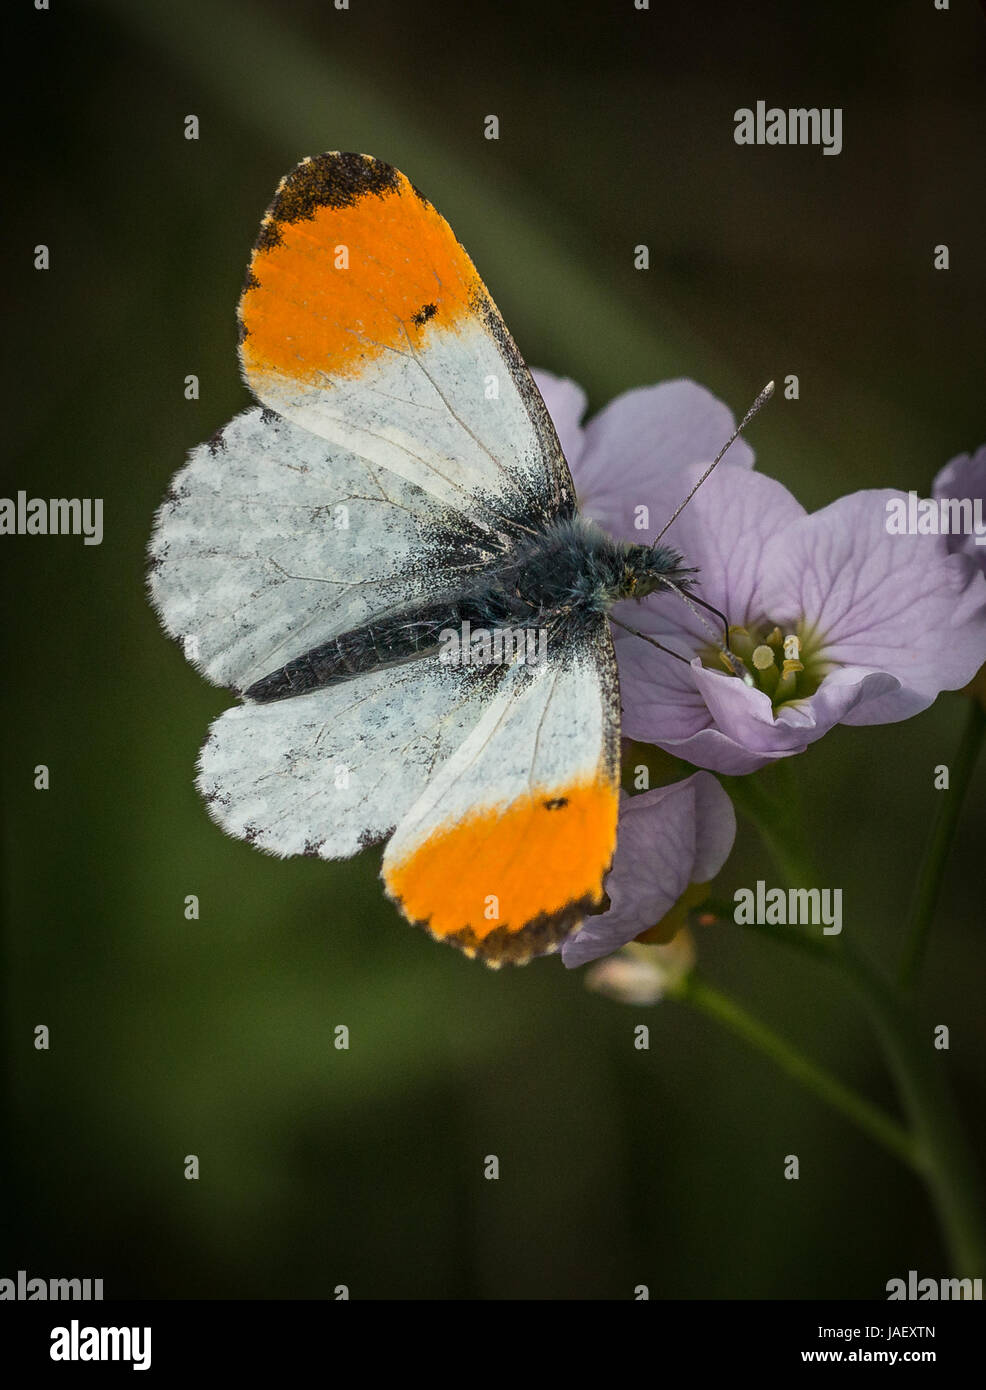 Punta anaranjada mariposa macho alimentándose de flor de cuco con los céspedes detrás Foto de stock